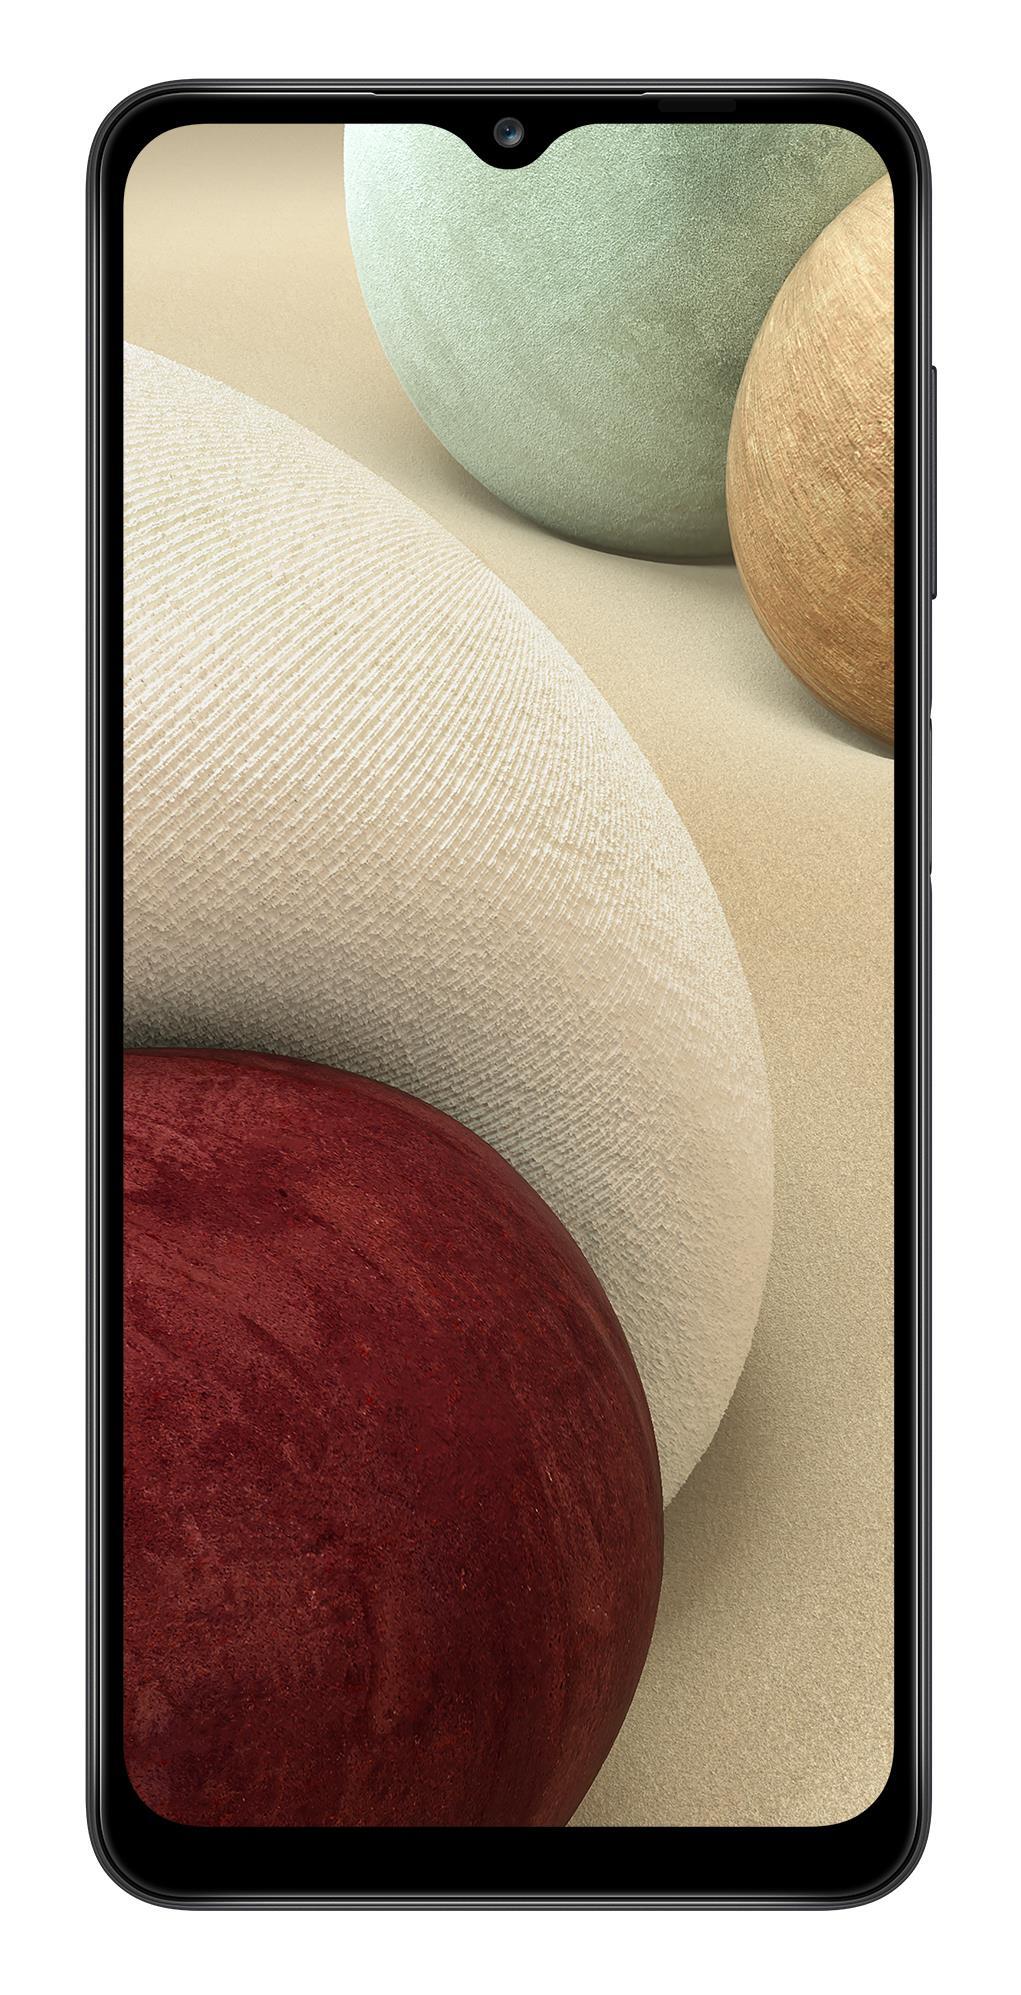 Libre Samsung Galaxy a12 1651 cm 65“ hd+ 323 gb negro 32gb 6.5 octacore 2ghz smartphone 3g ram y capacidad interna ampliables principal 48mp 5.000 mah de batería carga color 2021 32 3 850 5000 11 3gb32gb 3gb 4g 3+32gb